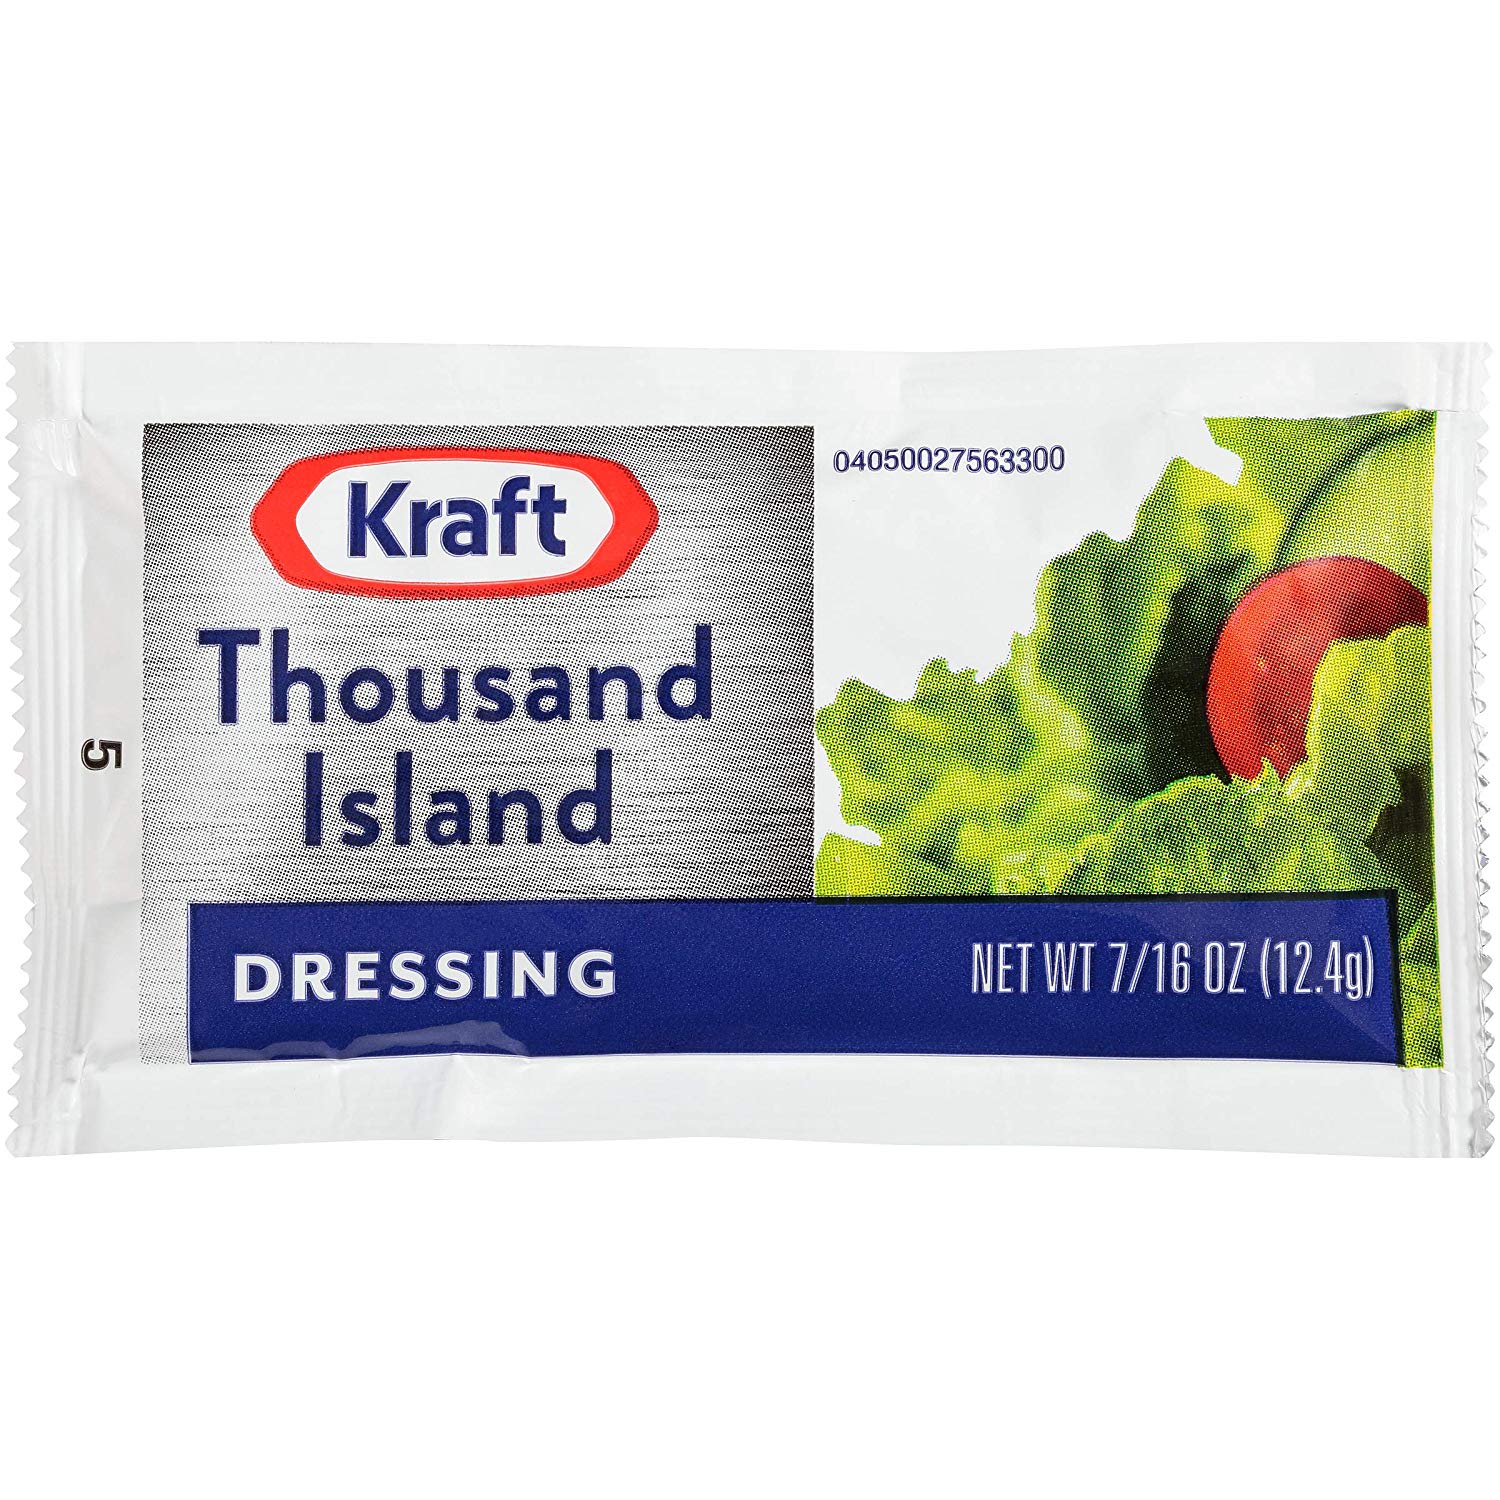 [IND] Kraft 1000 Island Dressing 1oz (100)